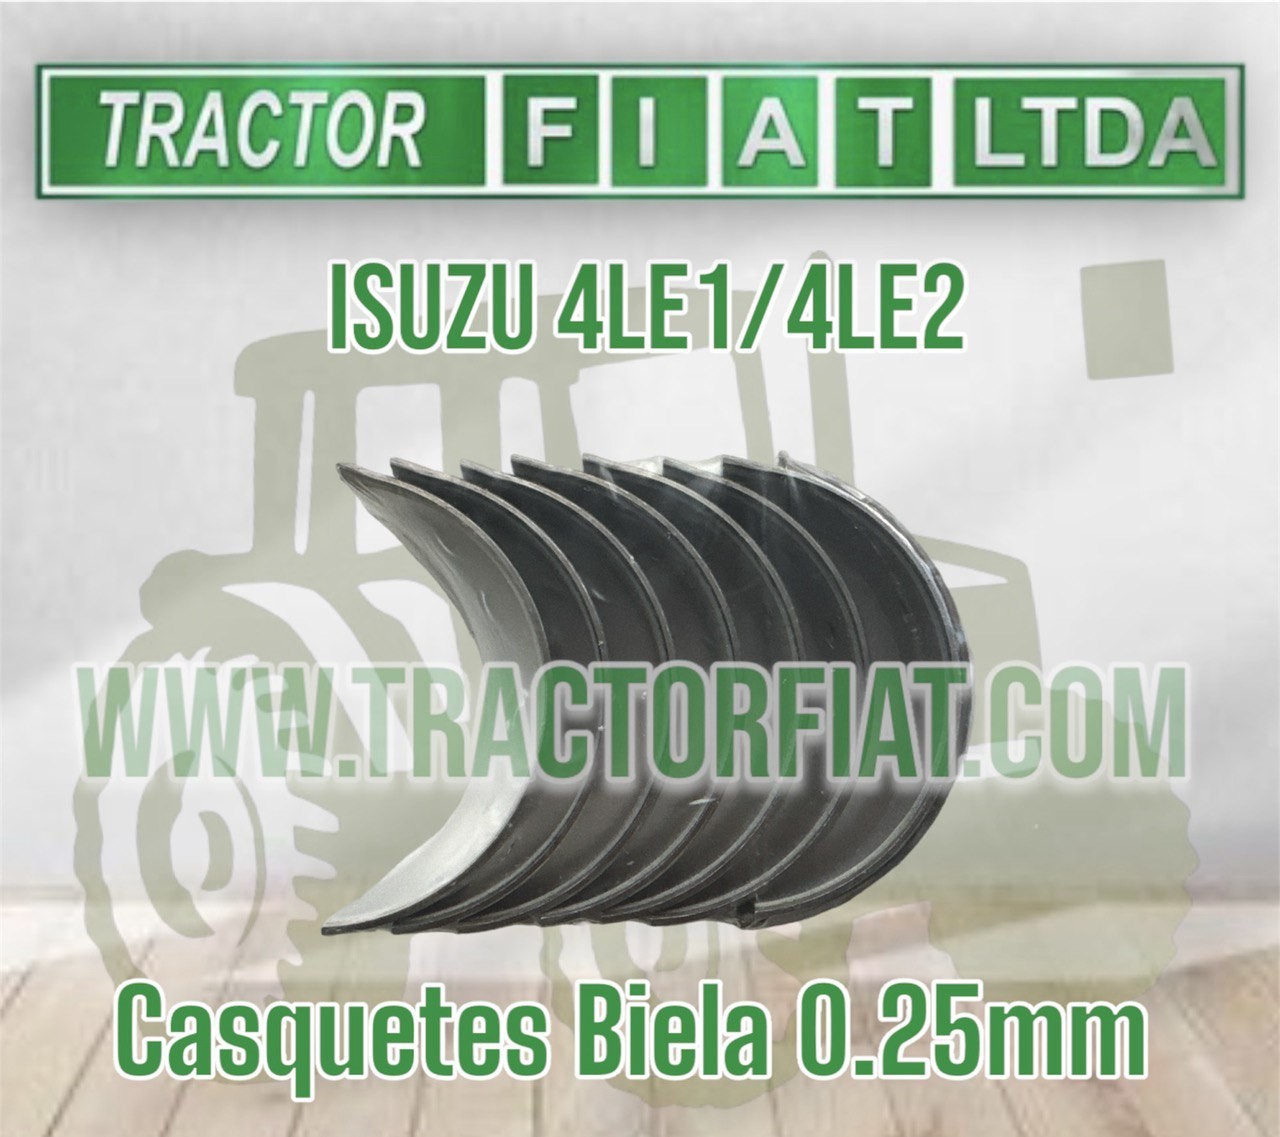 CASQUETES BIELA 0.25 MM - MOTOR ISUZU 4LE1/4LE2